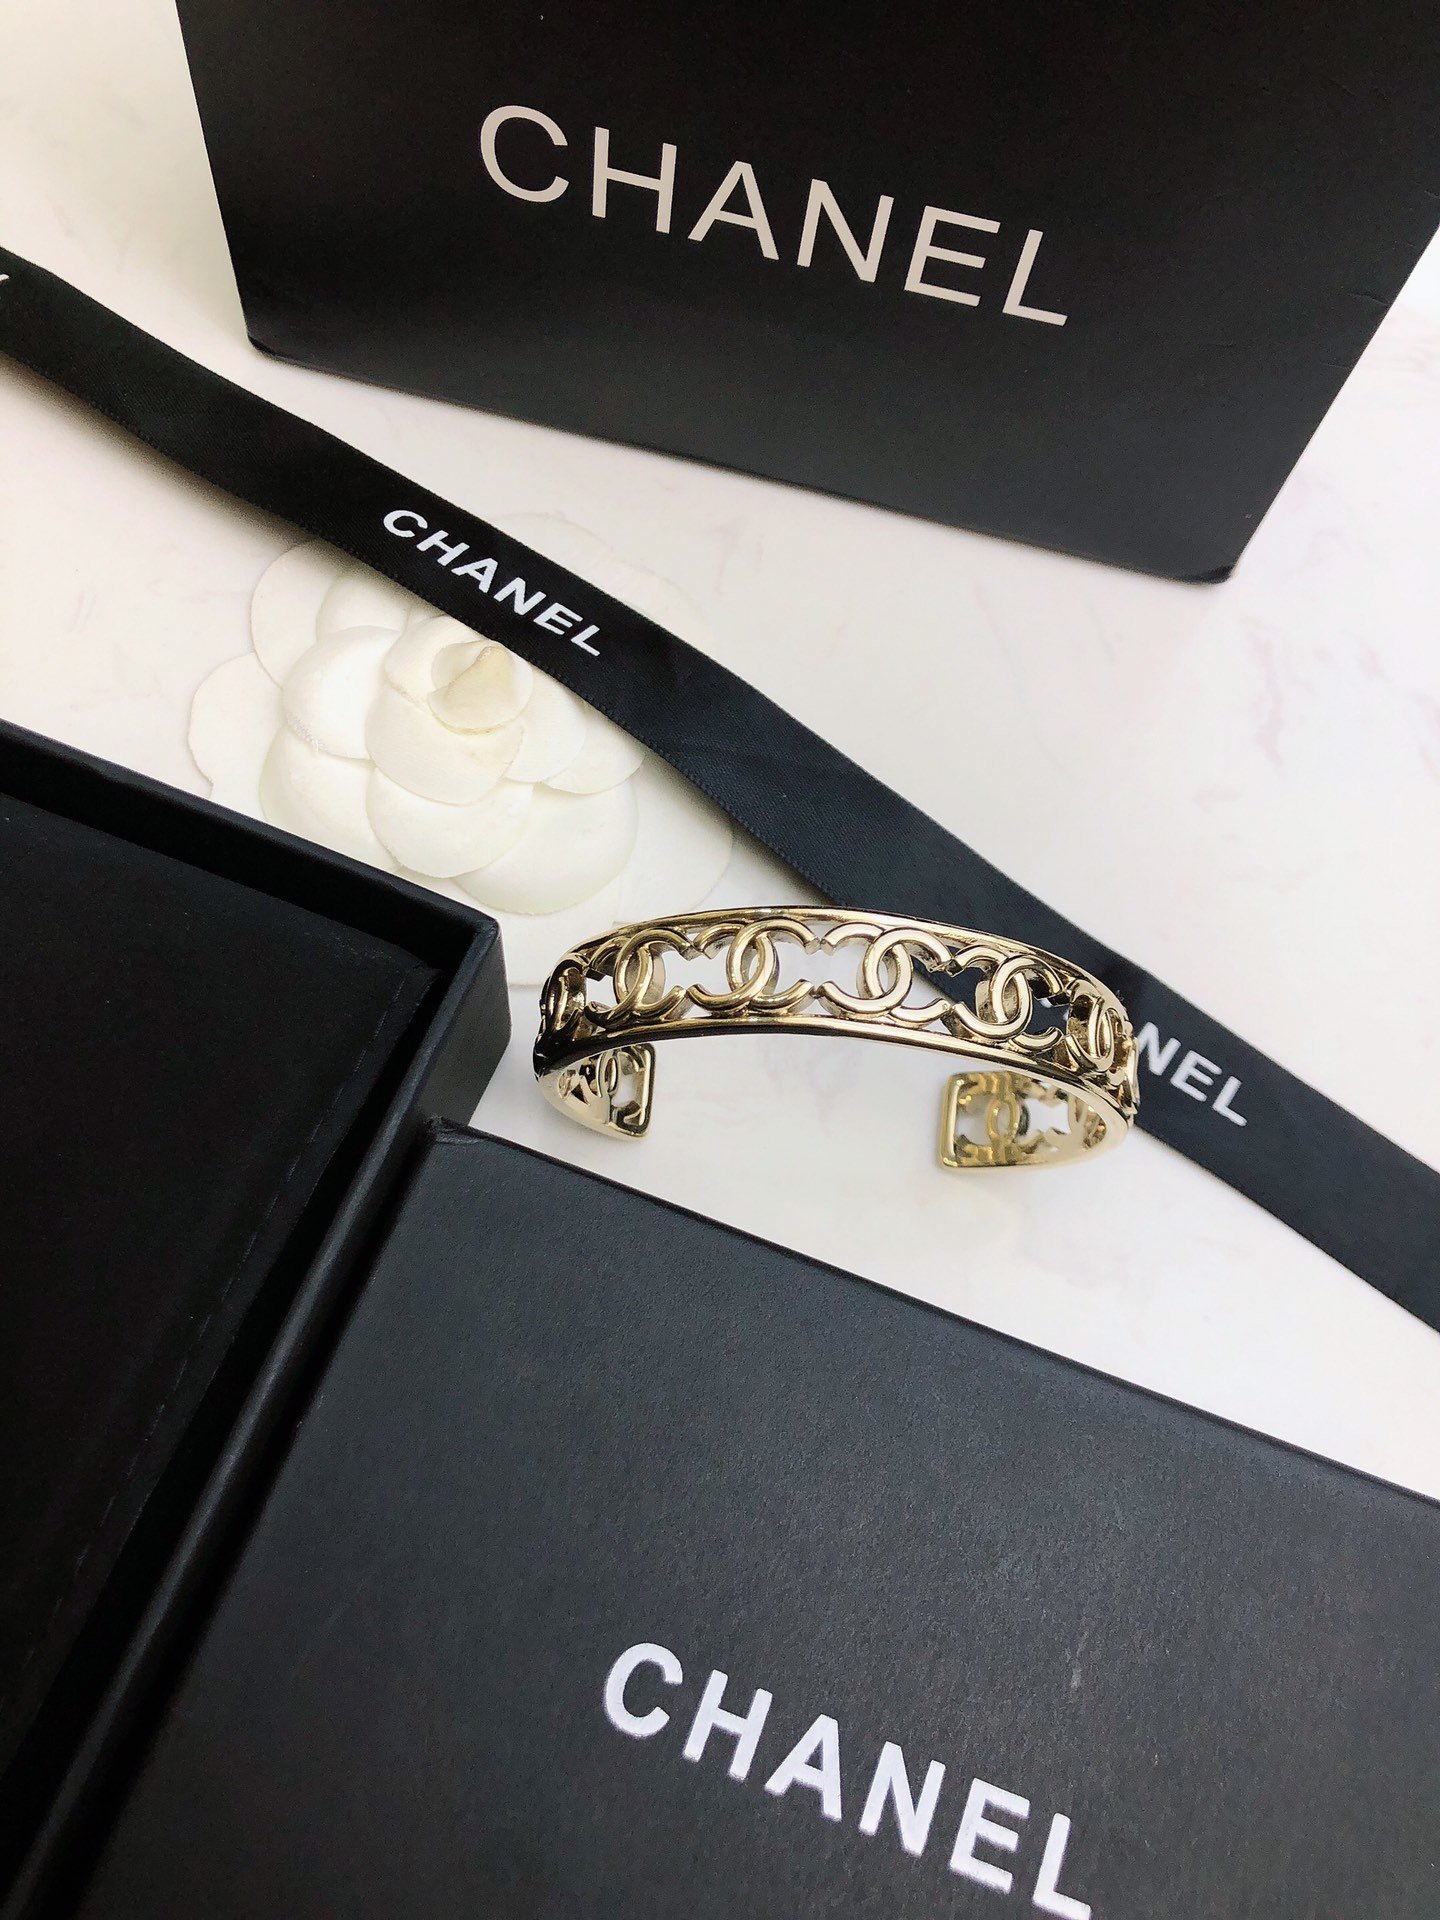 香奈儿新款手镯简约设计轮廓造型突出镂空镀金Chanel最强助攻单搭或者混搭都能让人一见倾心分分钟变身时尚